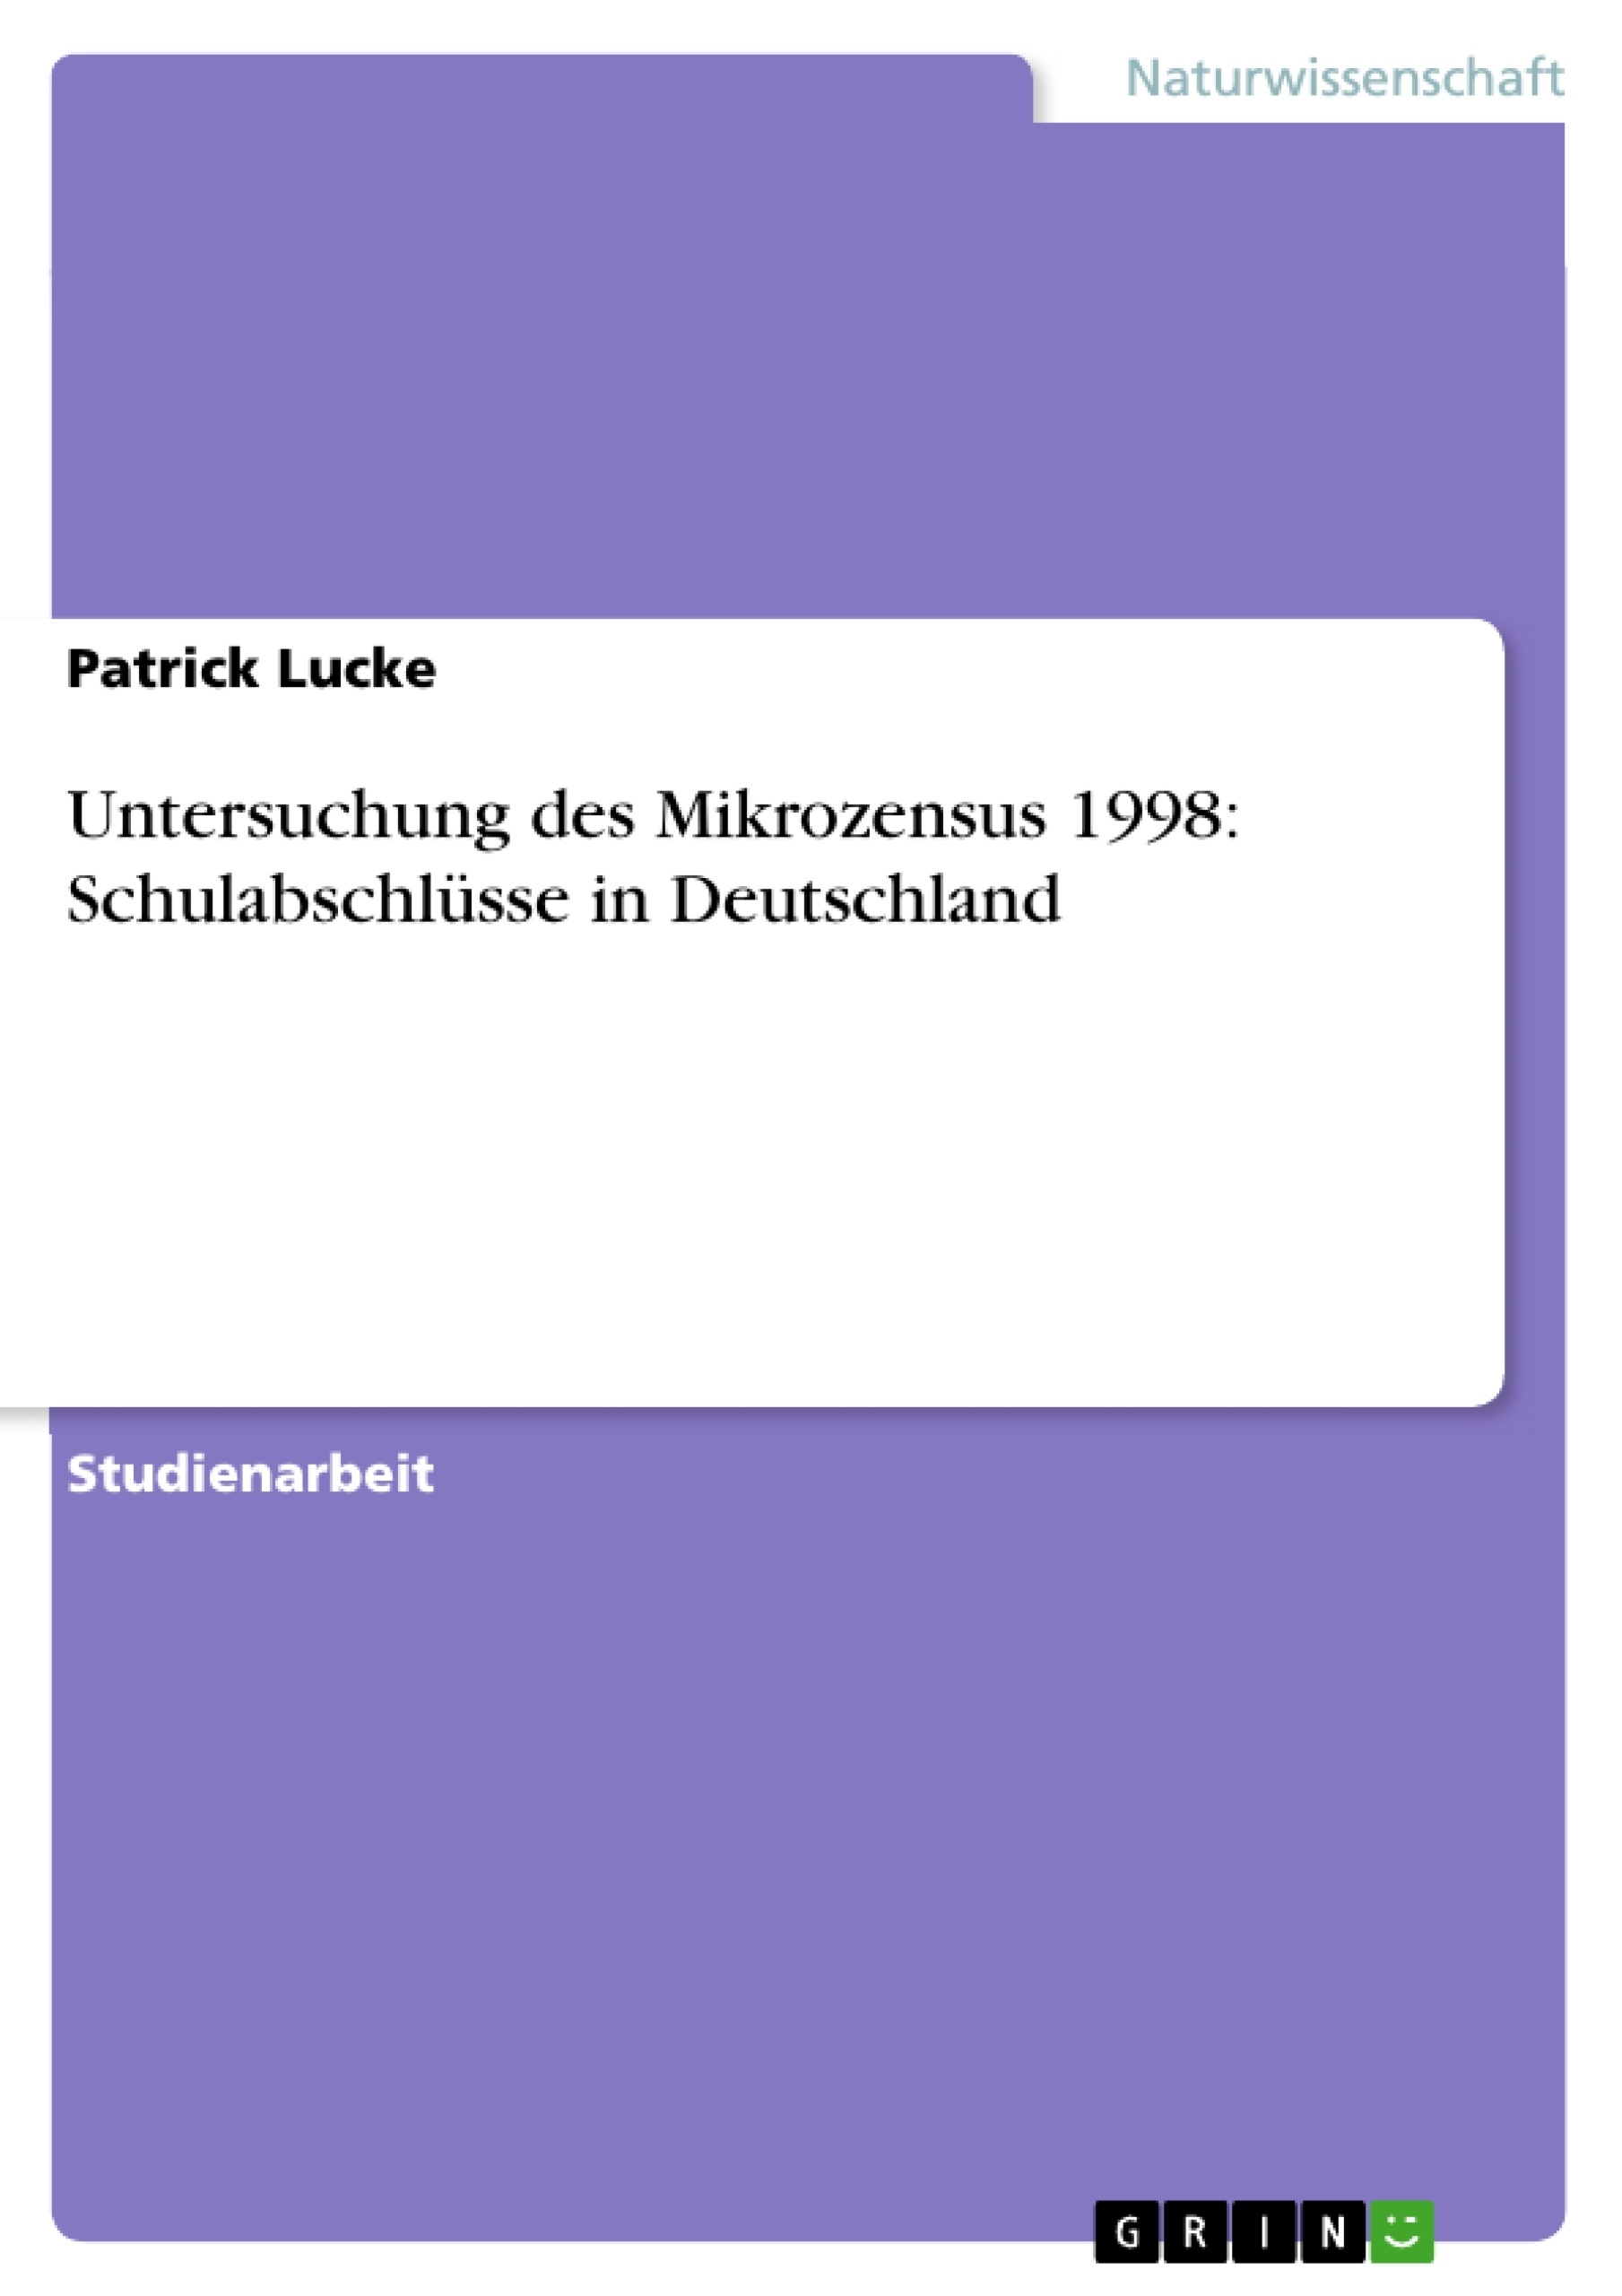 Title: Untersuchung des Mikrozensus 1998: Schulabschlüsse in Deutschland